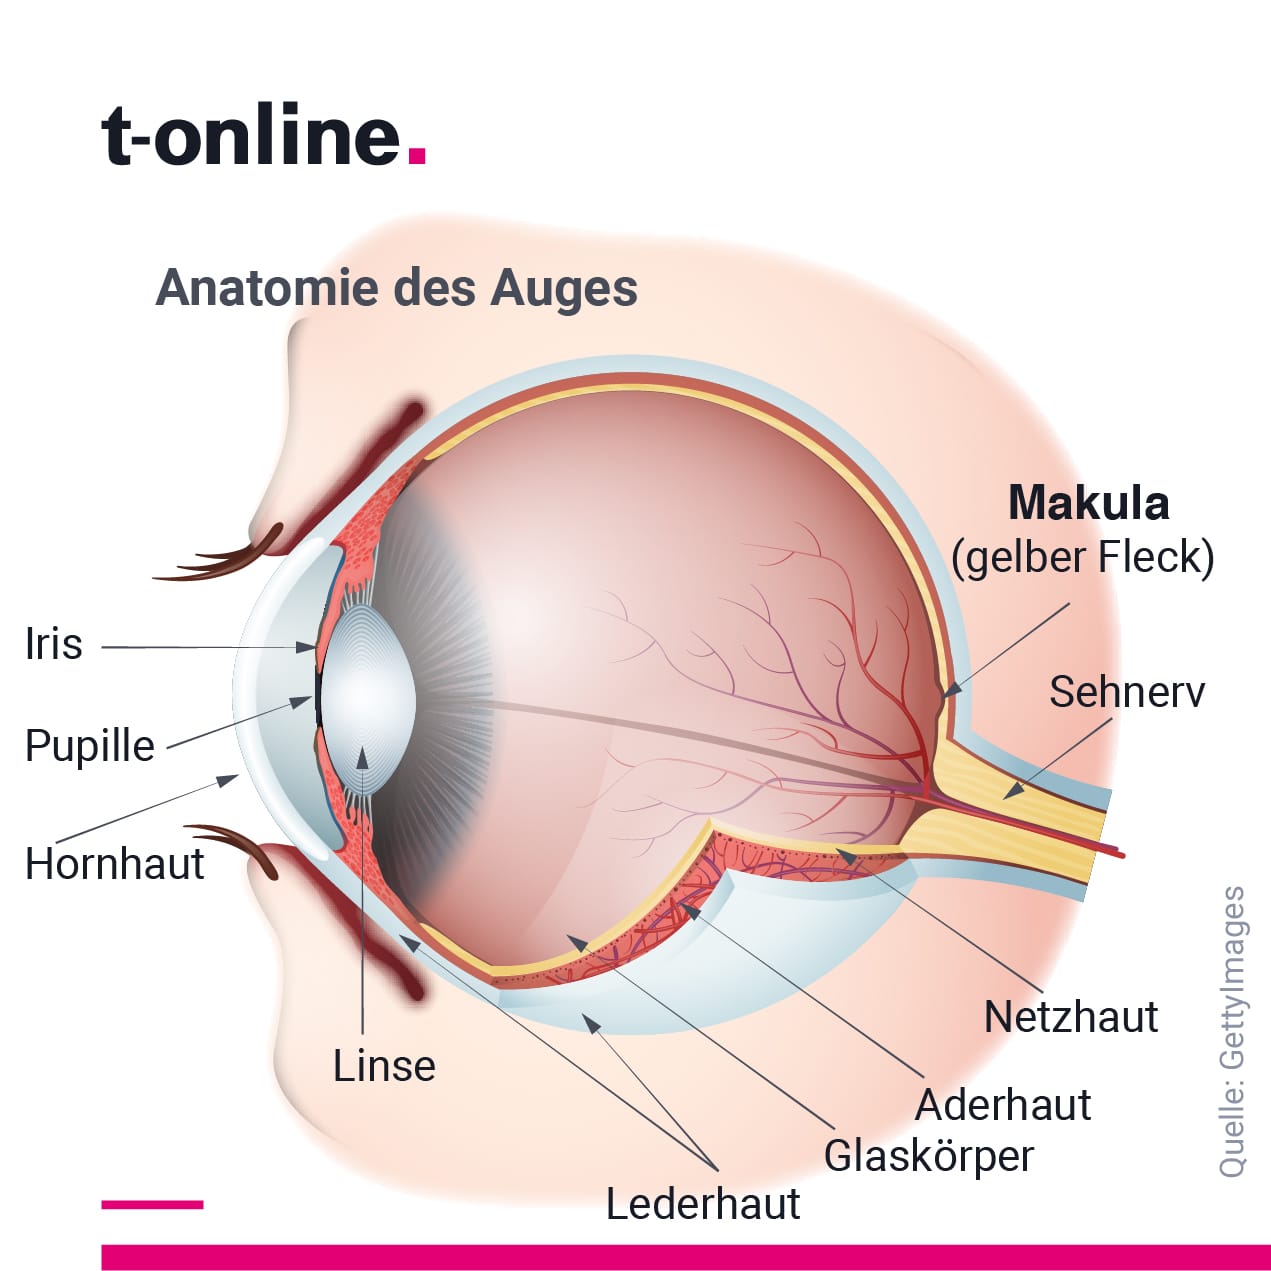 Anatomie des Auges: Die Makula sorgt dafür, dass wir in der Bildmitte scharf sehen können.